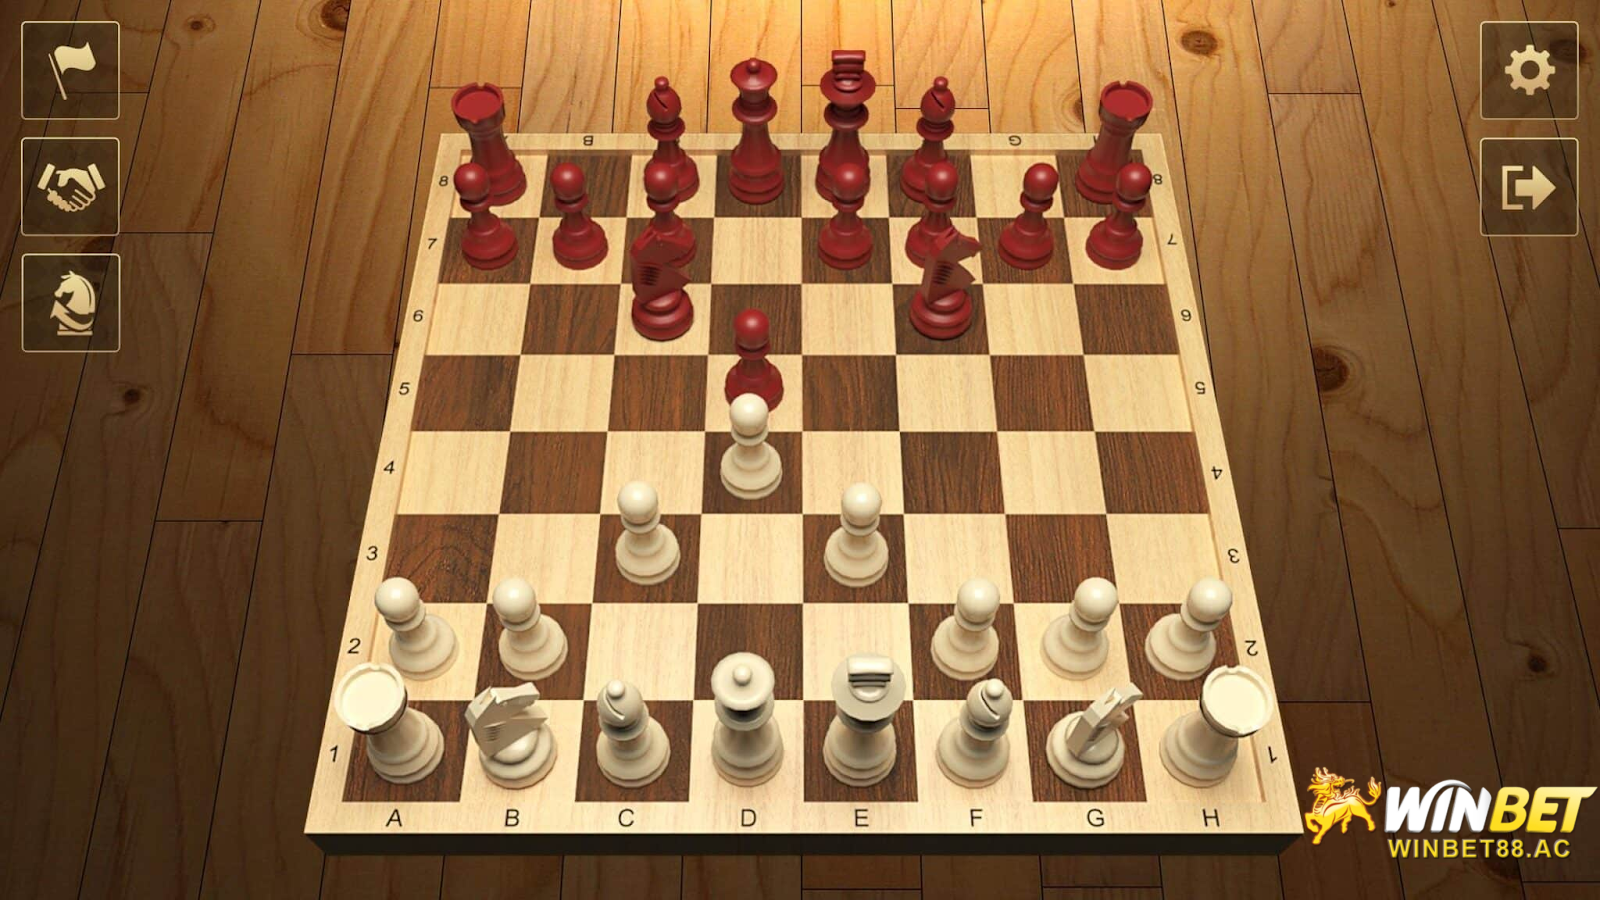 Tìm hiểu về phiên bản cờ vua Tianfa Winbet